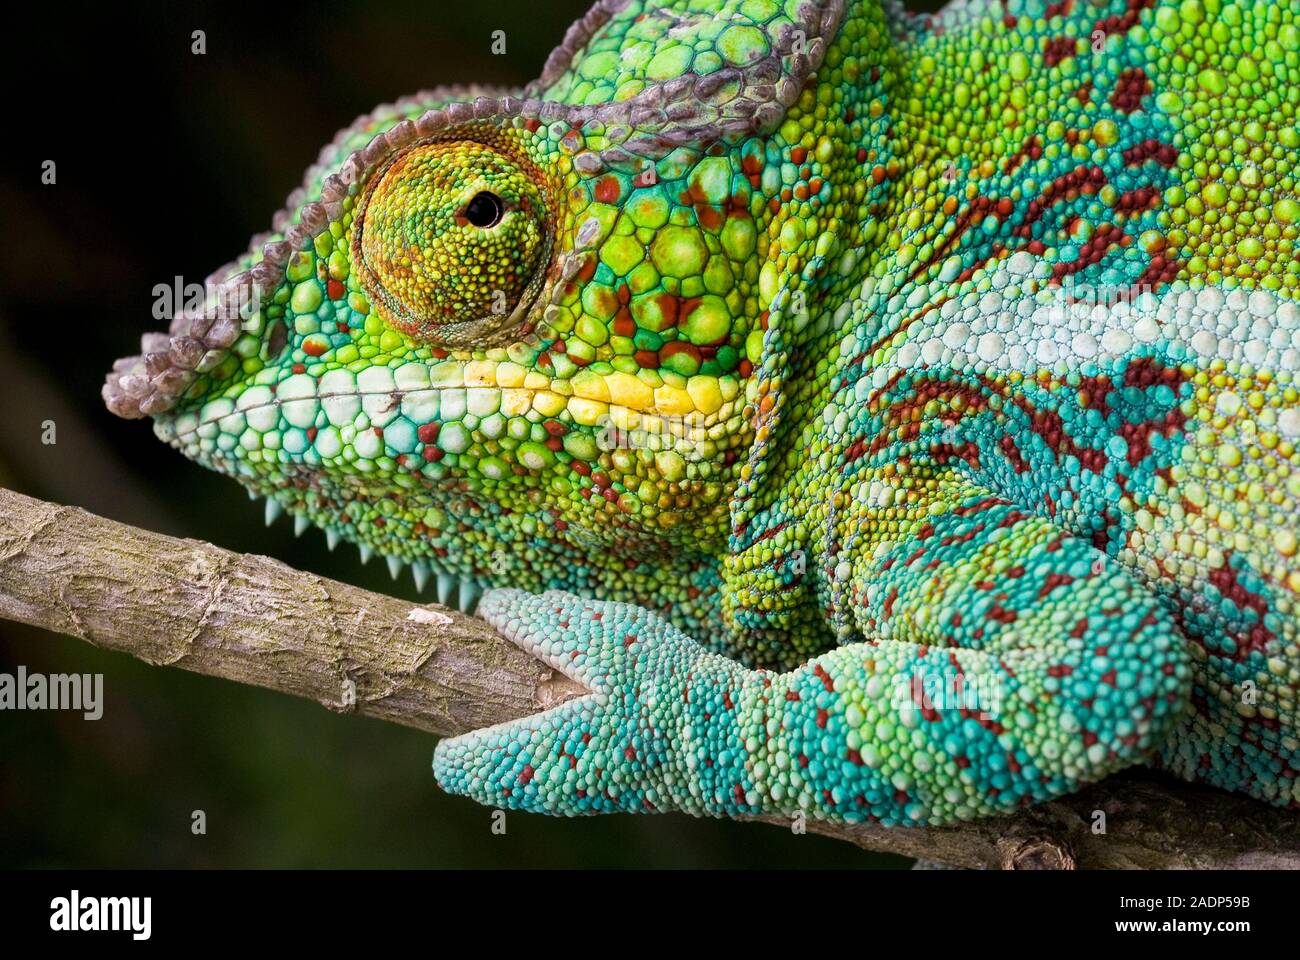 Caméléon panthère. Close up d'un caméléon panthère (Furcifer pardalis),  montrant les grands yeux et tong-comme pieds typique de caméléons. Caméléons'  e Photo Stock - Alamy